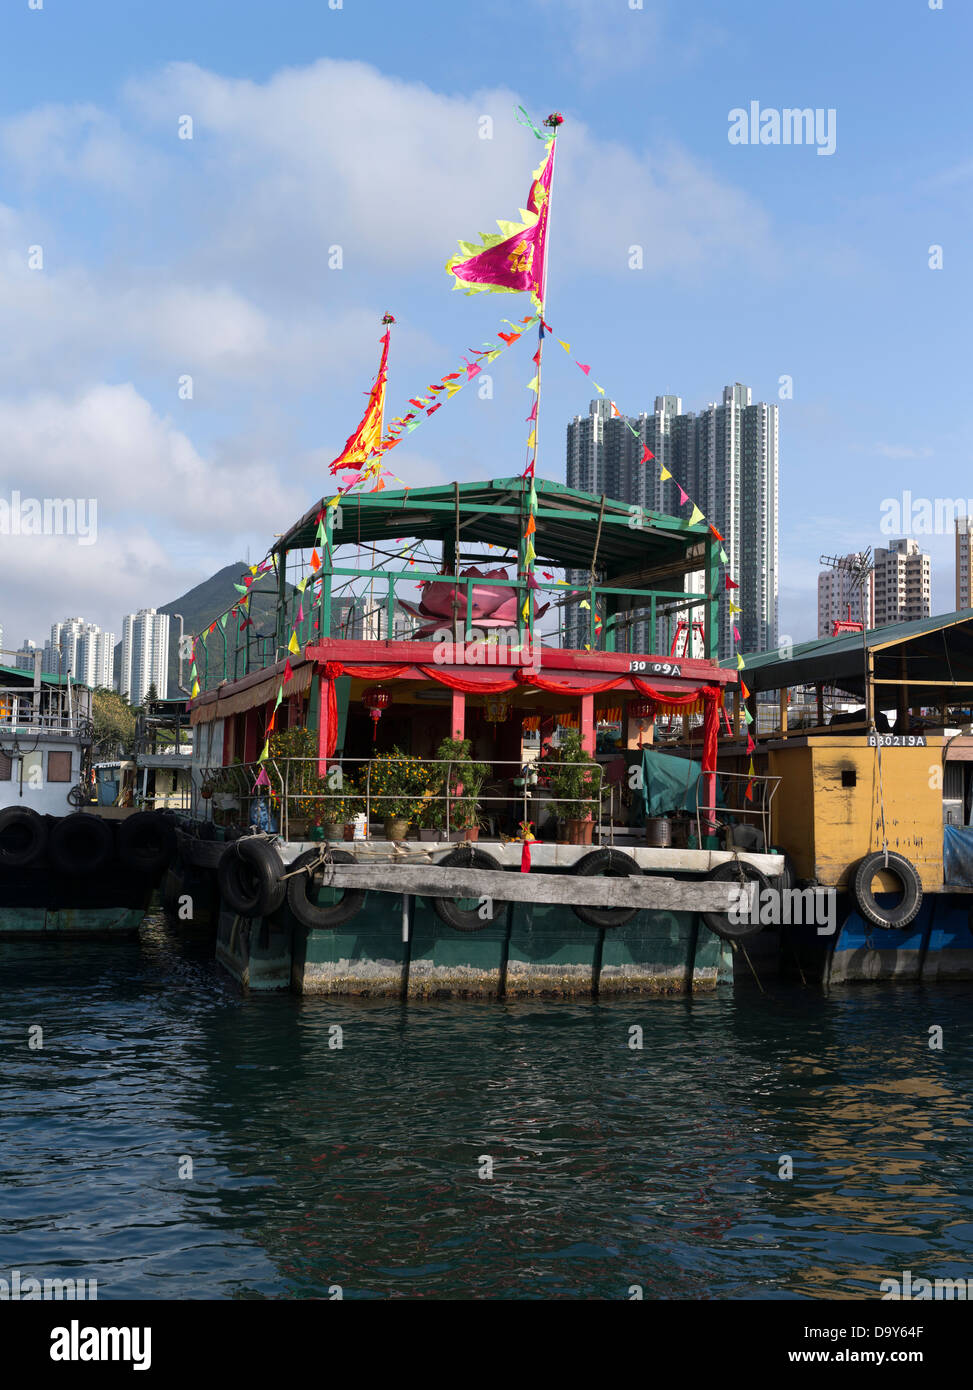 dh Chinesisches Neujahr ABERDEEN HONG KONG Familie Hafen Junk Boot mit Dekorationen Flaggen Haus Junks Hausboot Dorf schwimmenden Hafen Fischerboot Stockfoto